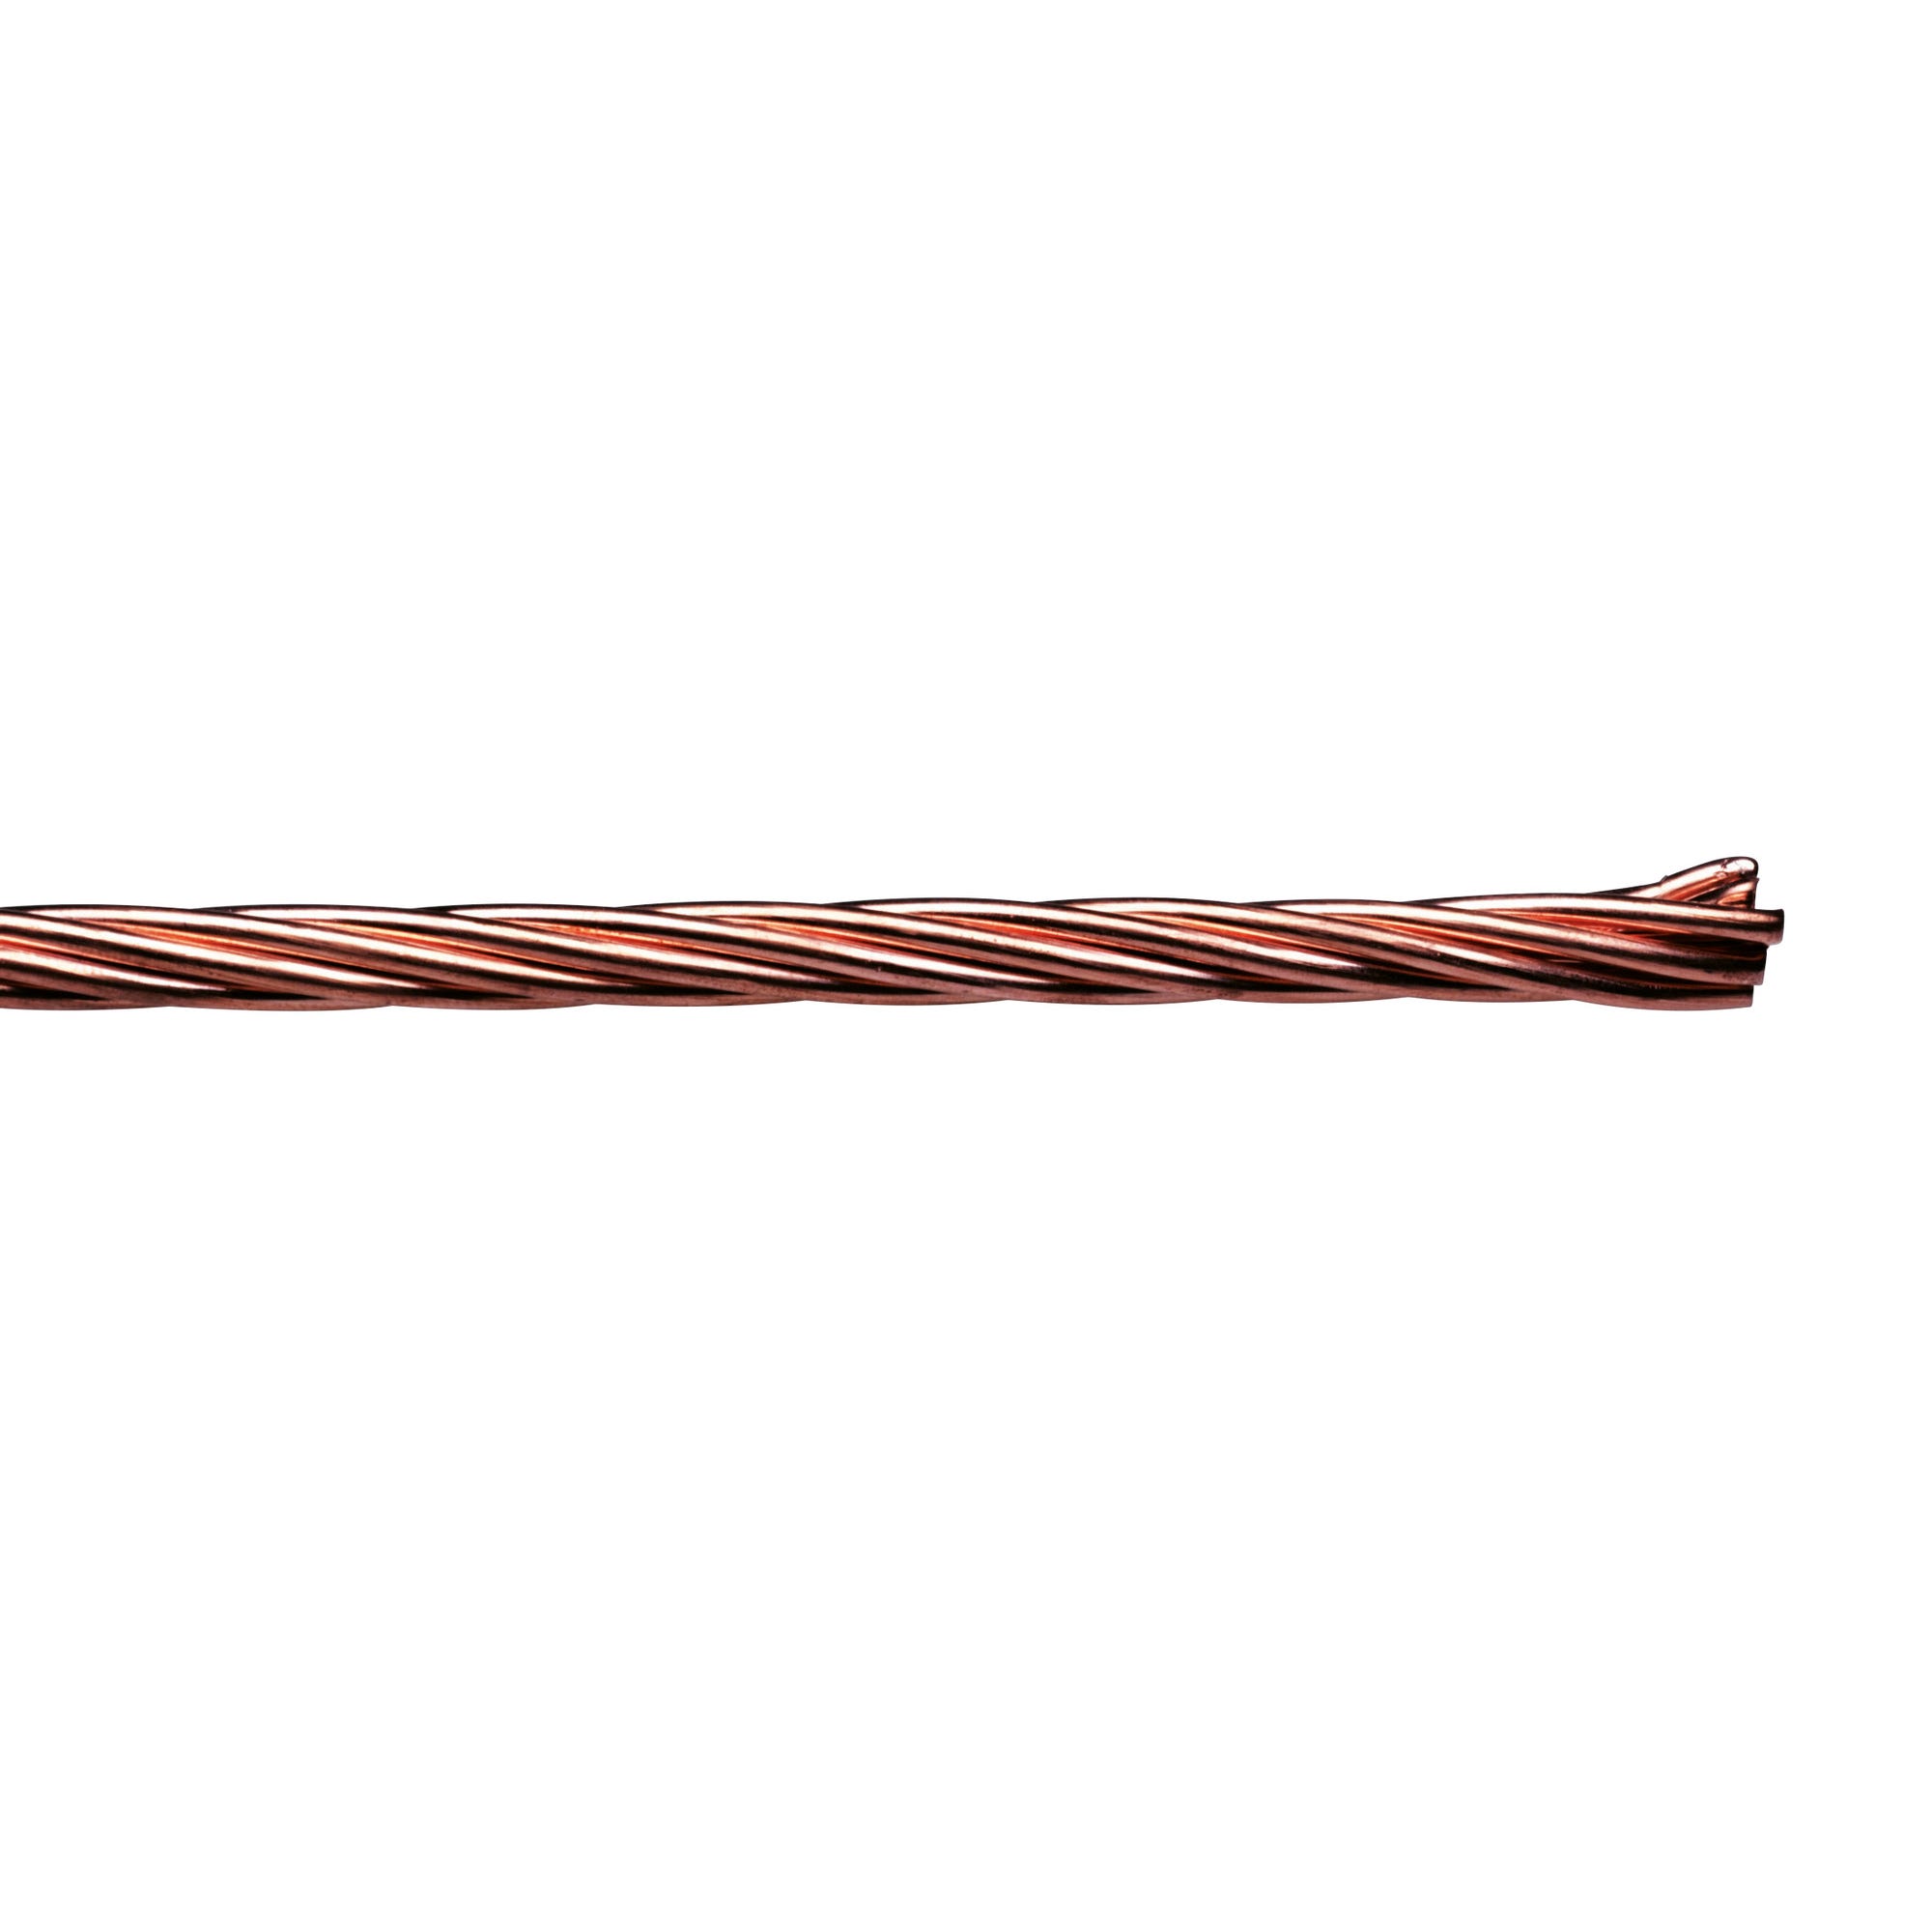 Câble cuivre 25 mm², au mètre 3